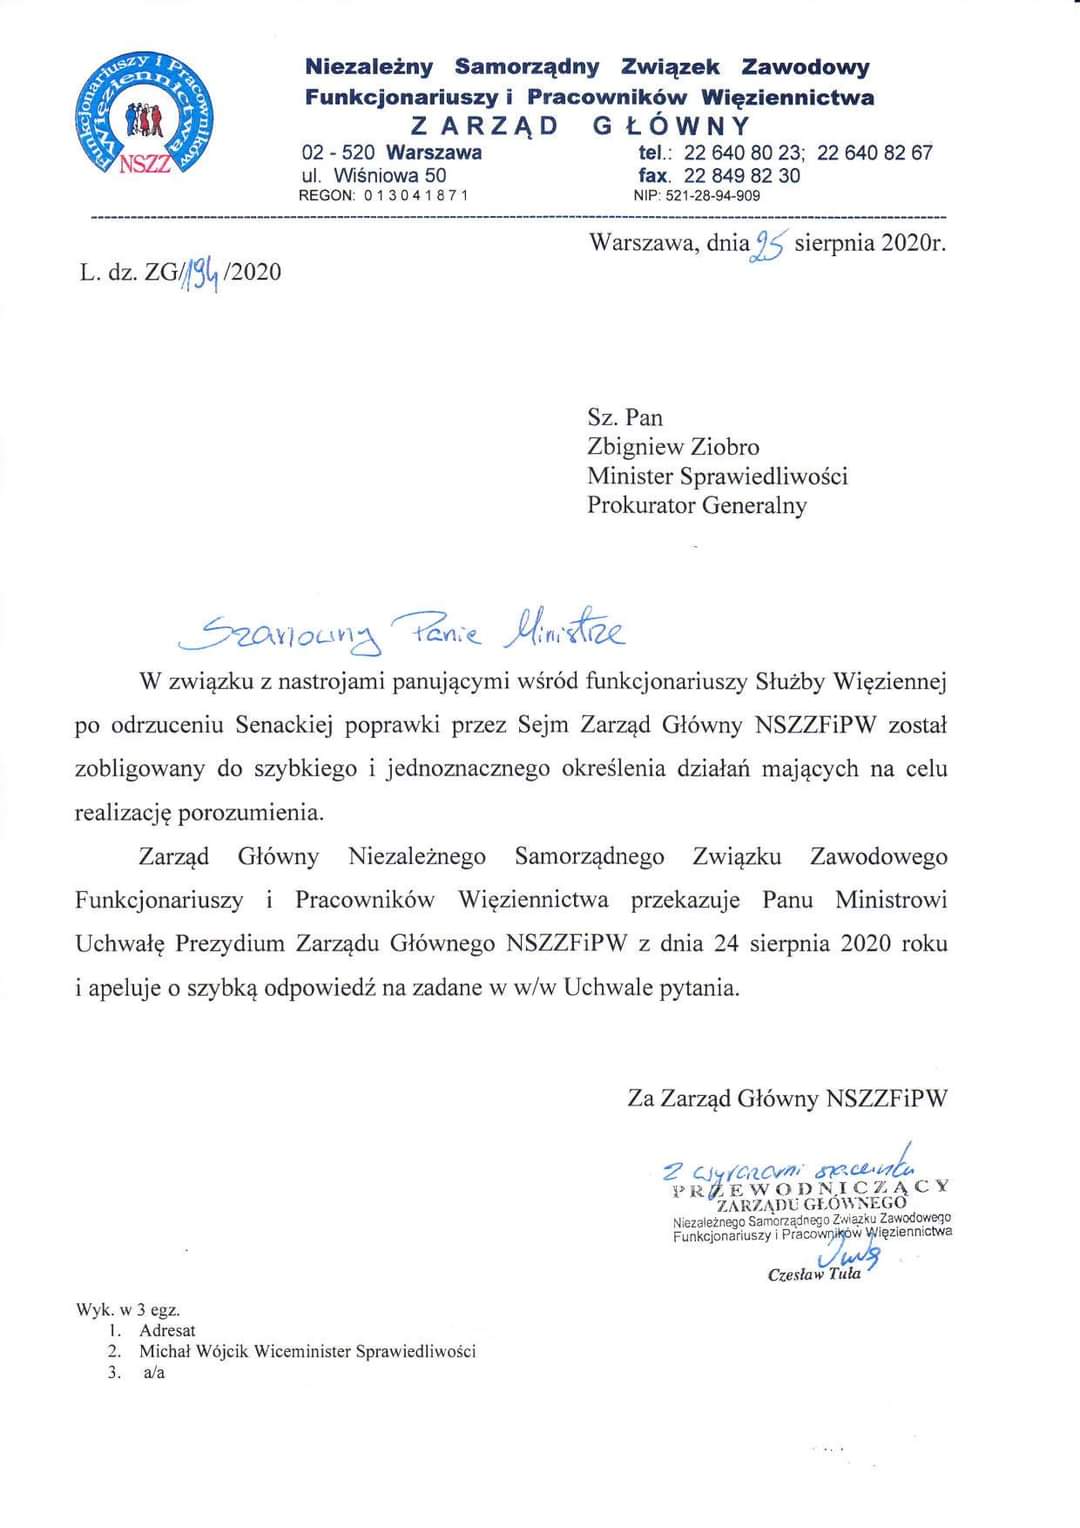 Uchwała Prezydium Zarządu Głównego NSZZFiPW skierowana do Ministra Sprawiedliwości.